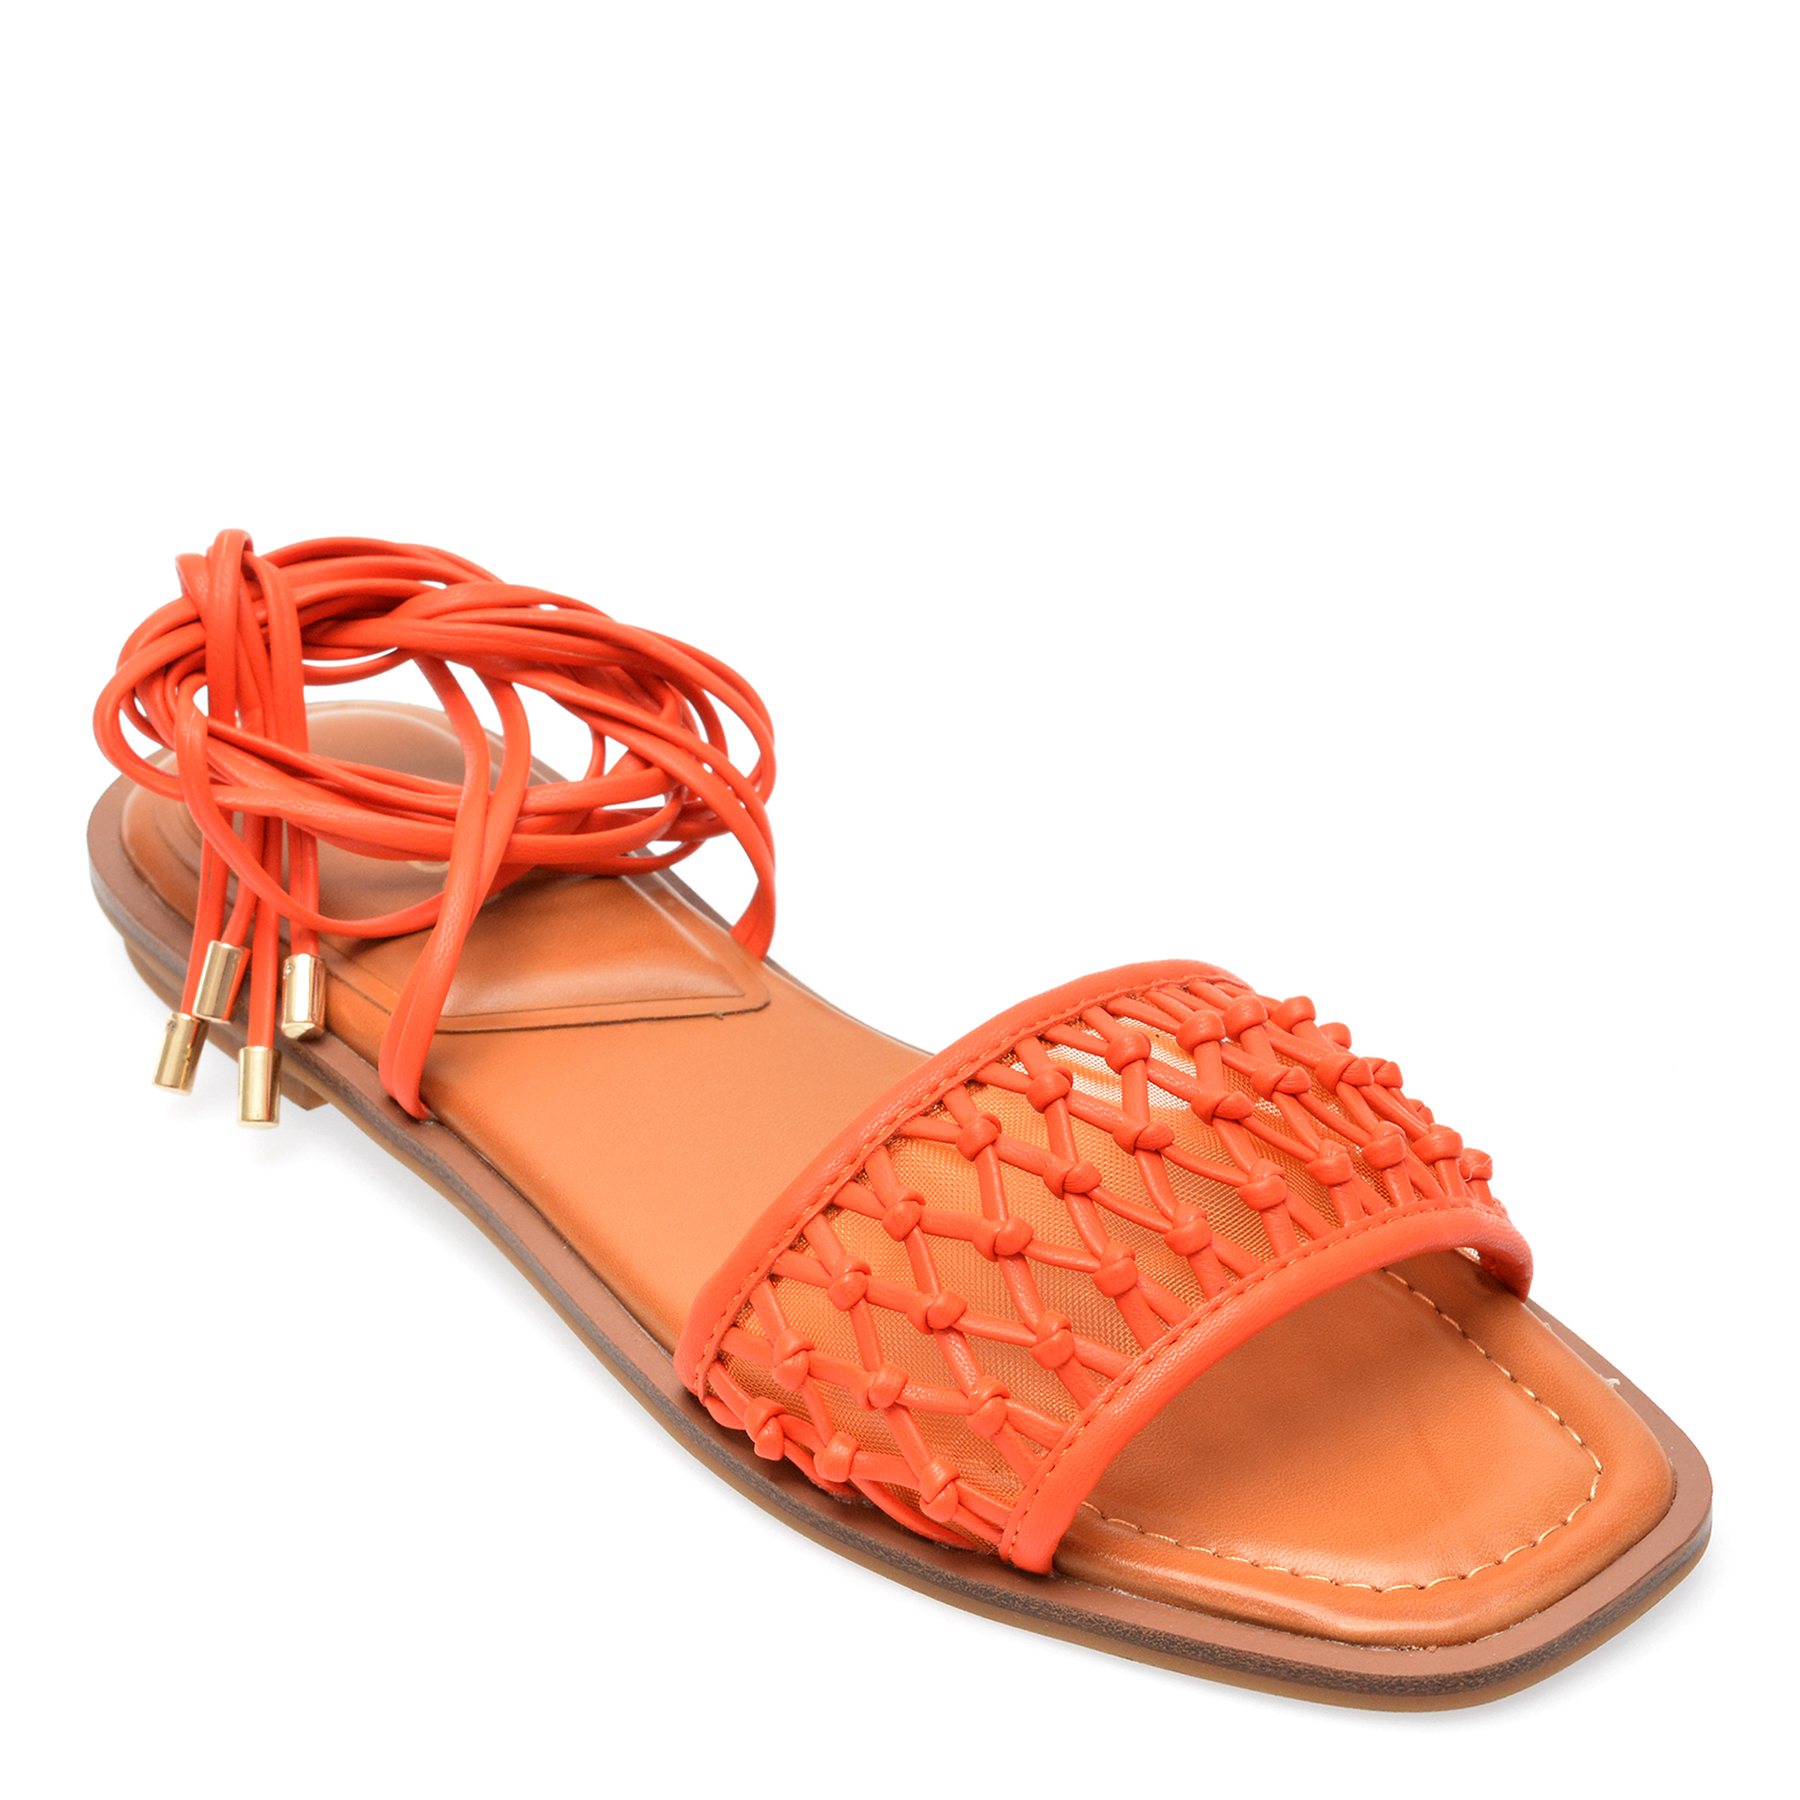 Sandale ALDO portocalii, SEAZEN820, din piele ecologica Aldo